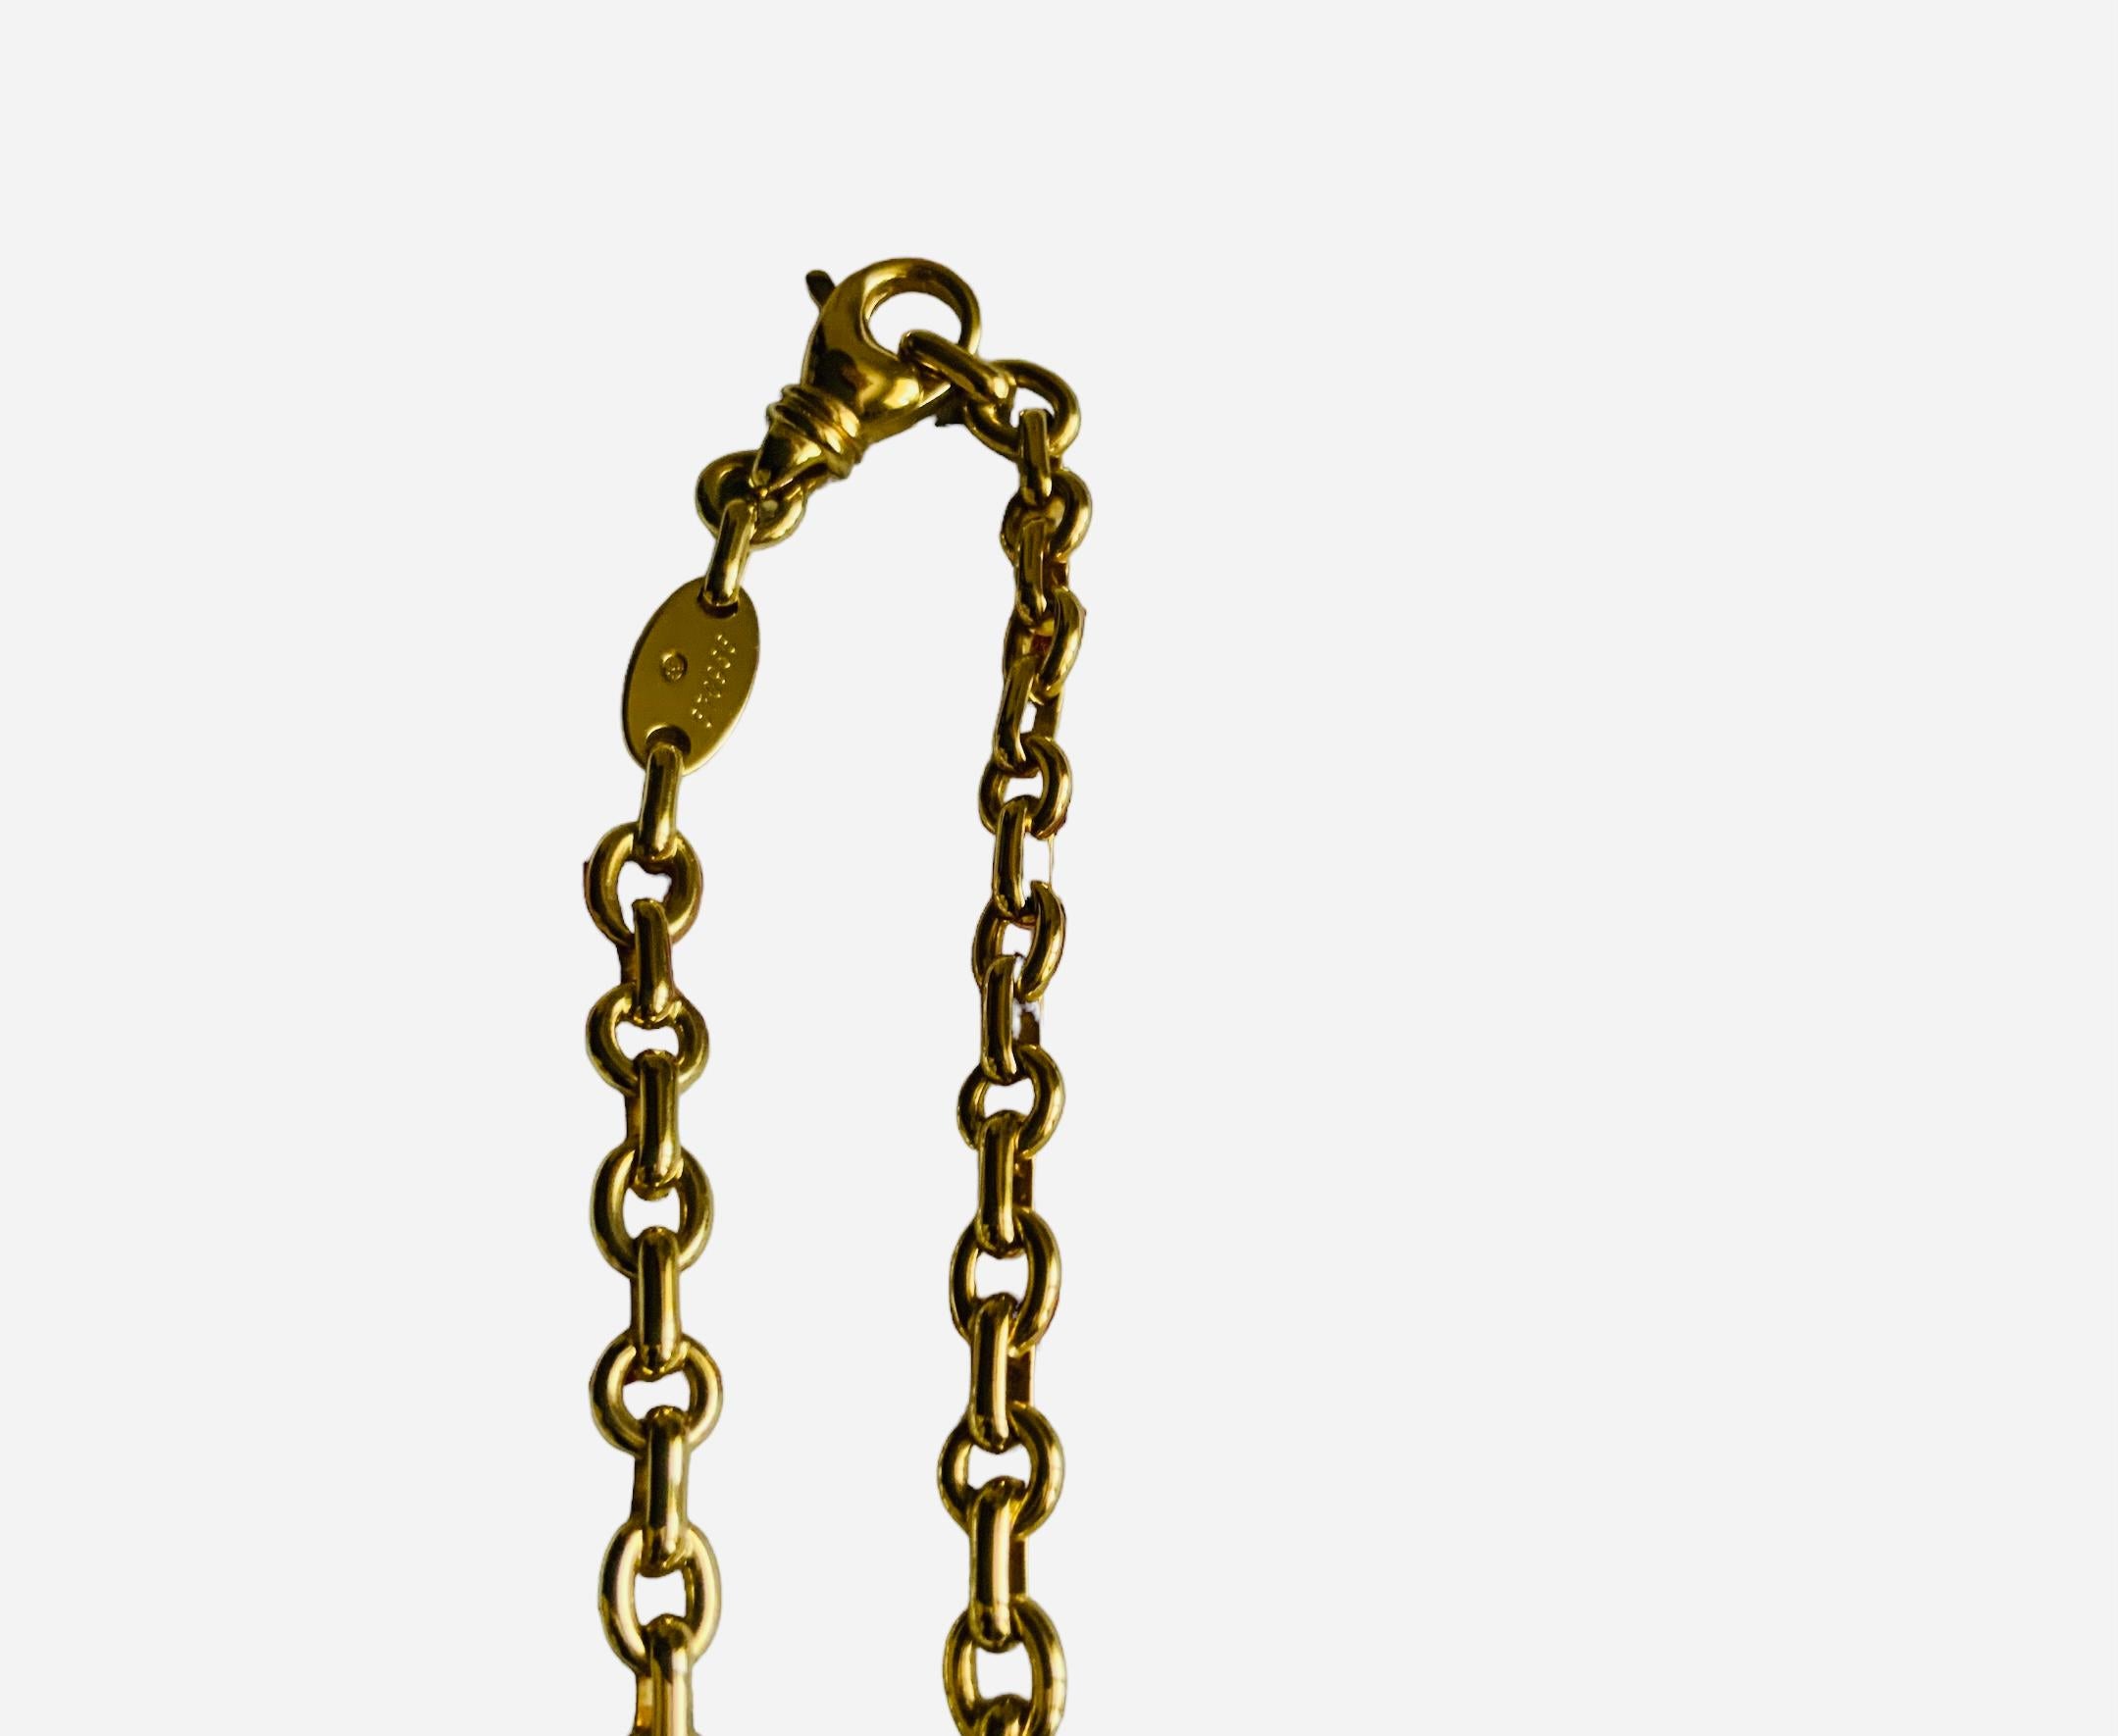  Chaumet, Paris Liens Heart 750 Gold Necklace  For Sale 2